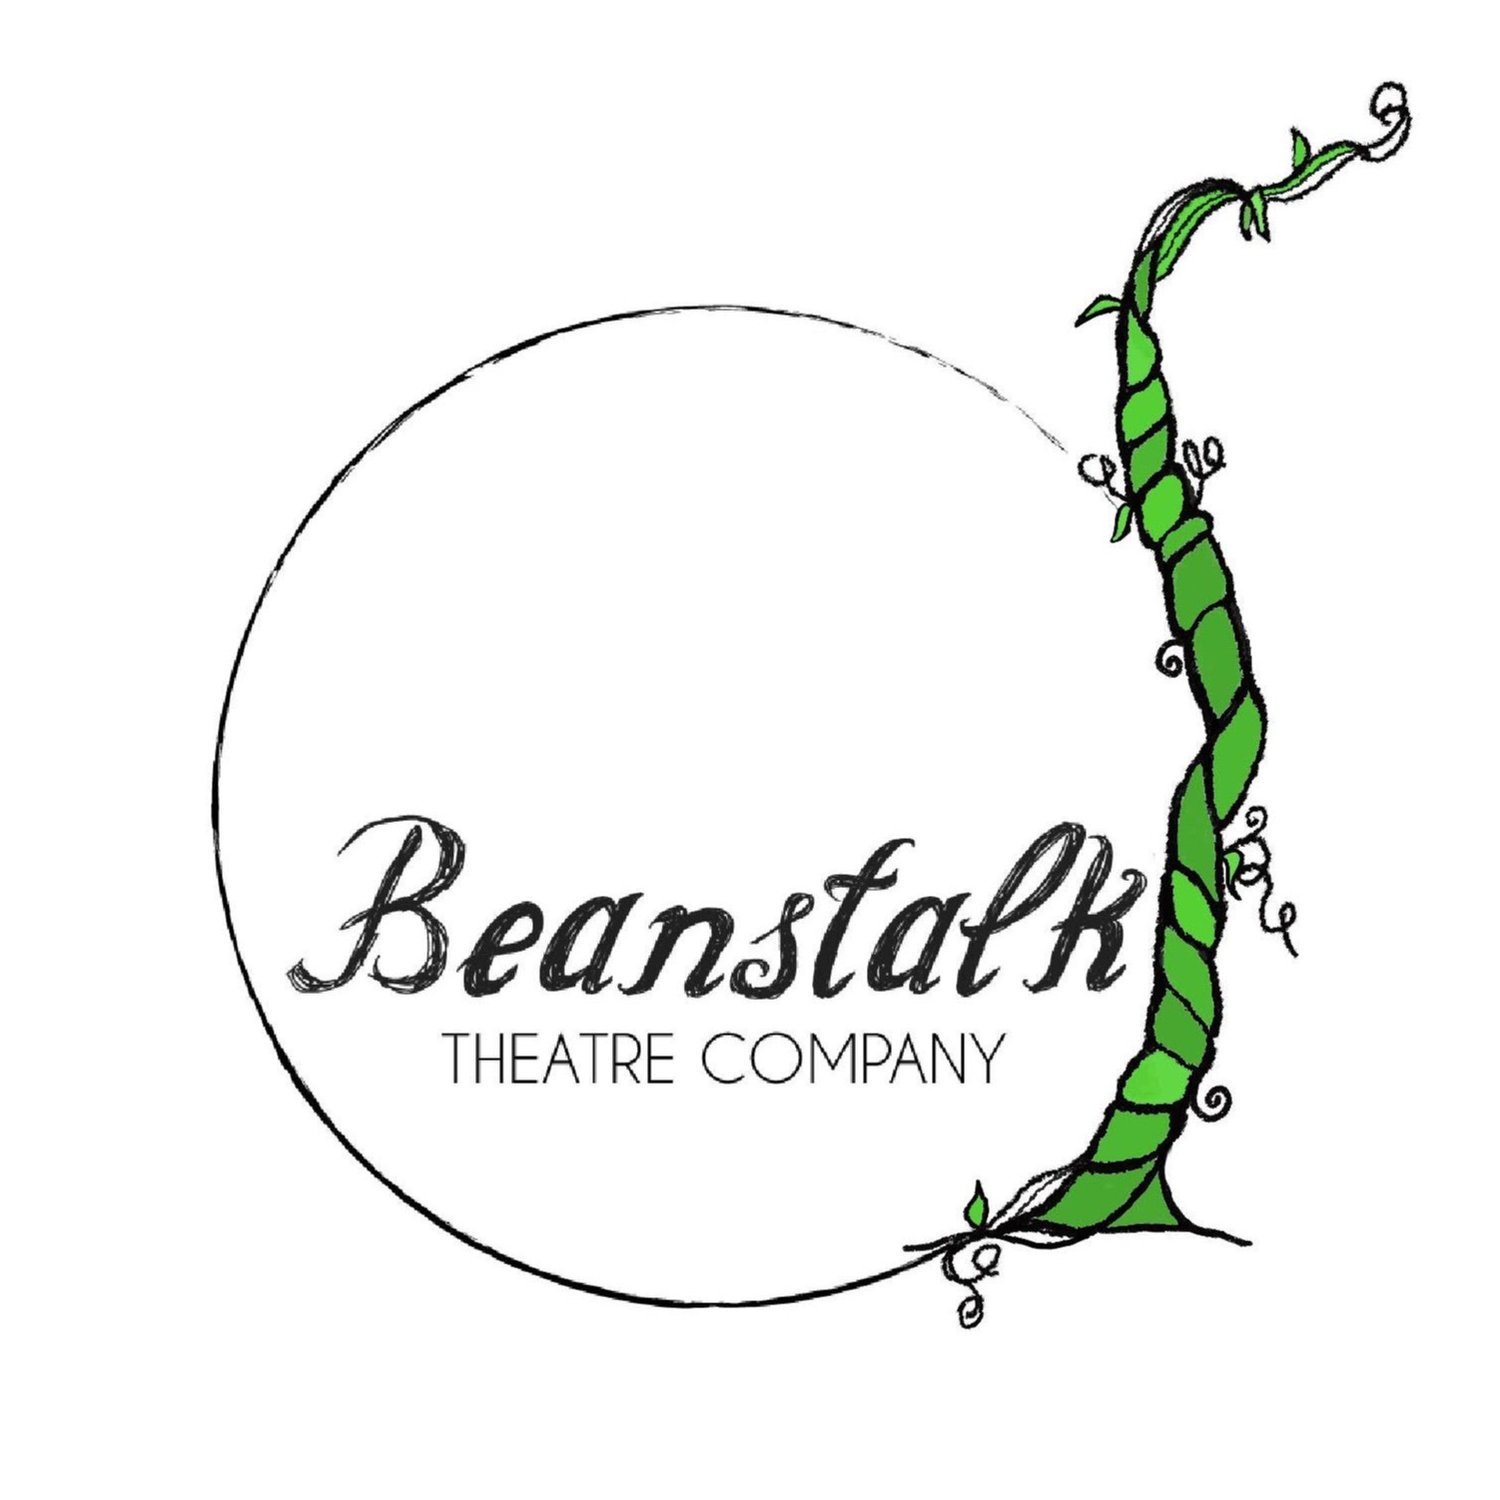 Beanstalk Theatre Company